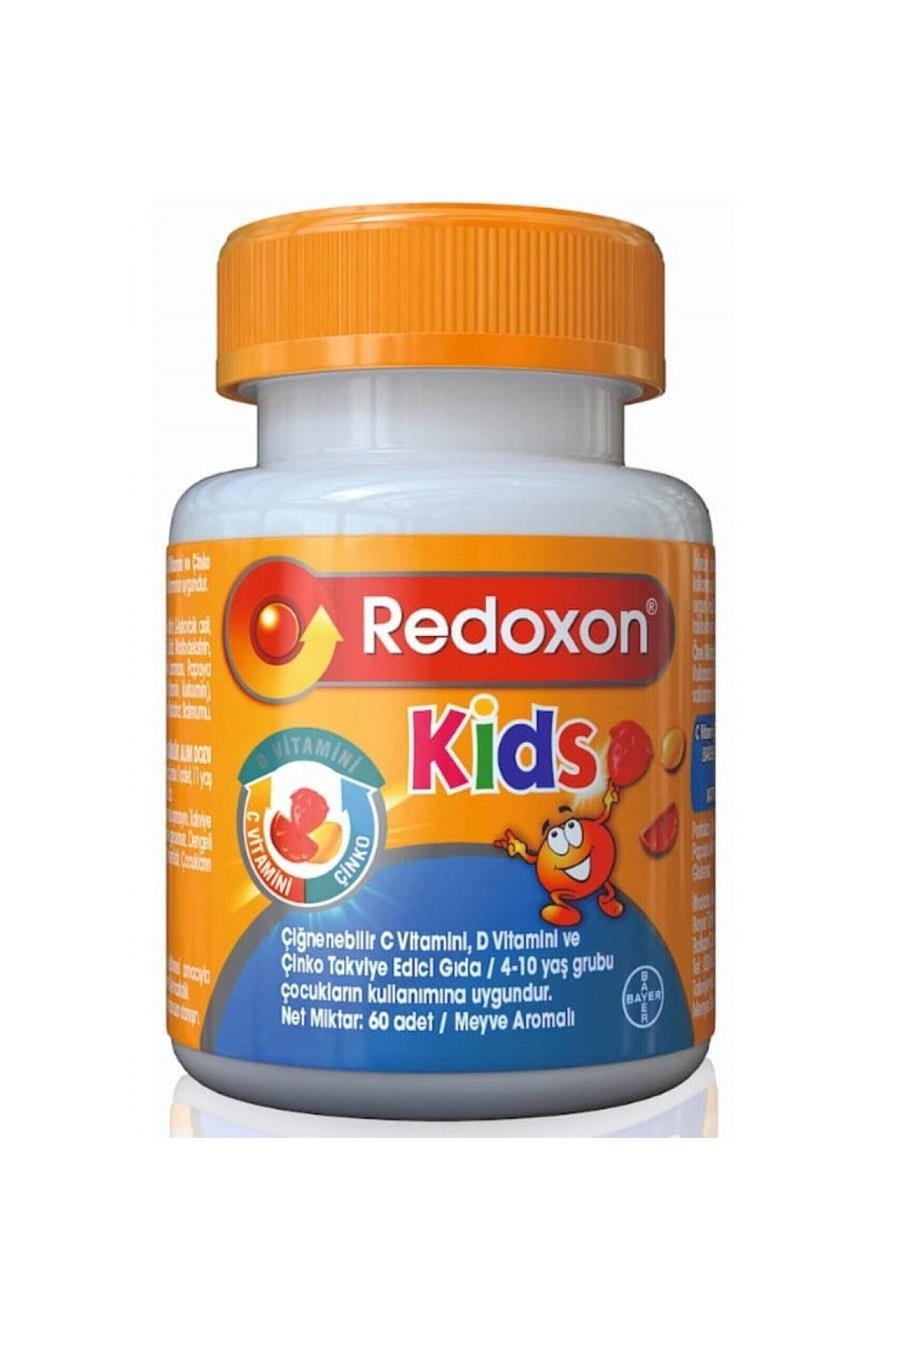 Redoxon Kids Çiğnenebilir 60 Tablet - 1